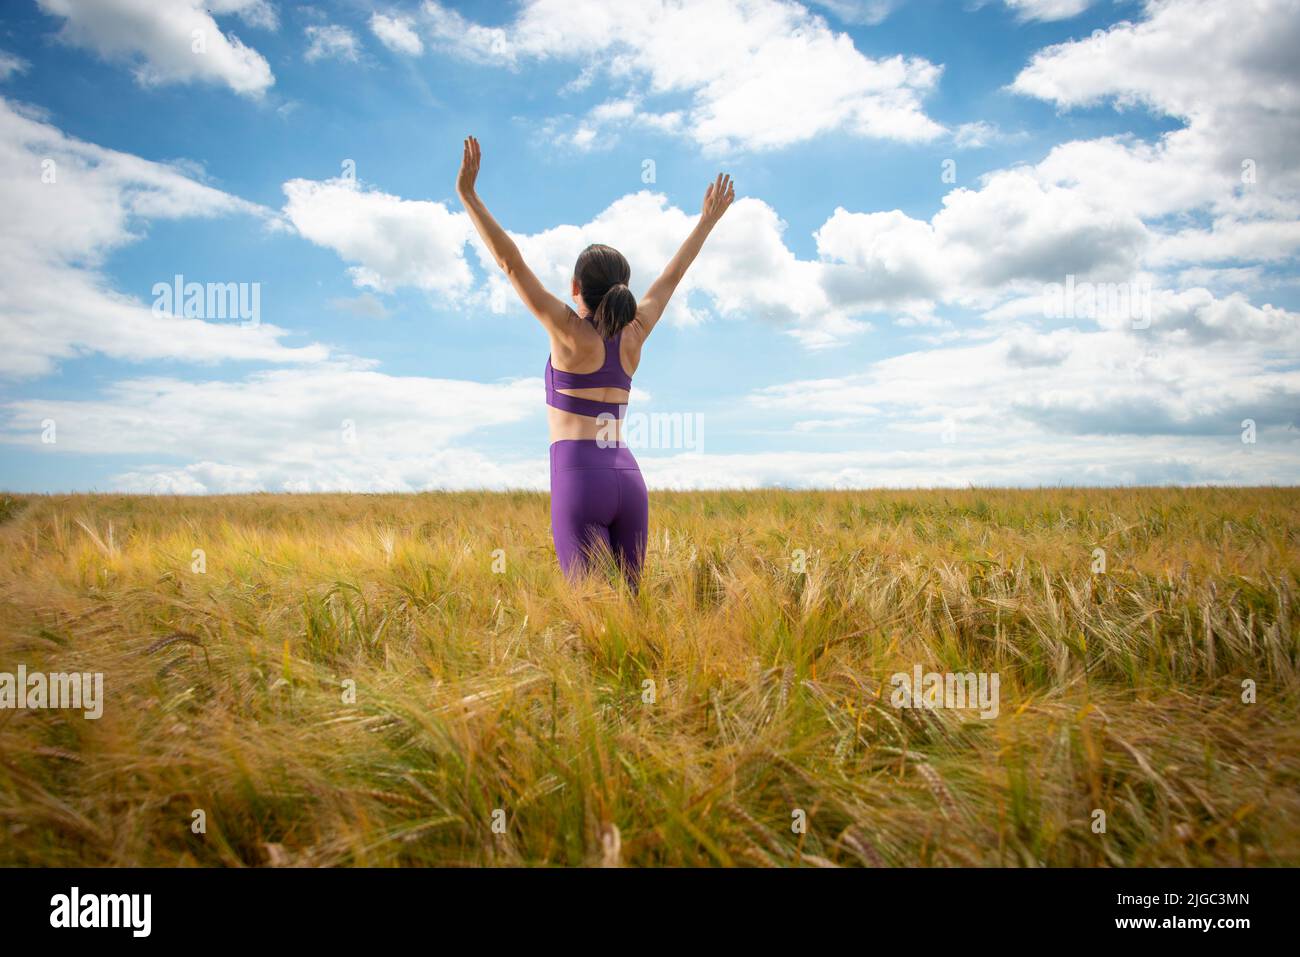 Mujer con los brazos levantados en medio de un campo disfrutando del verano y la naturaleza Foto de stock